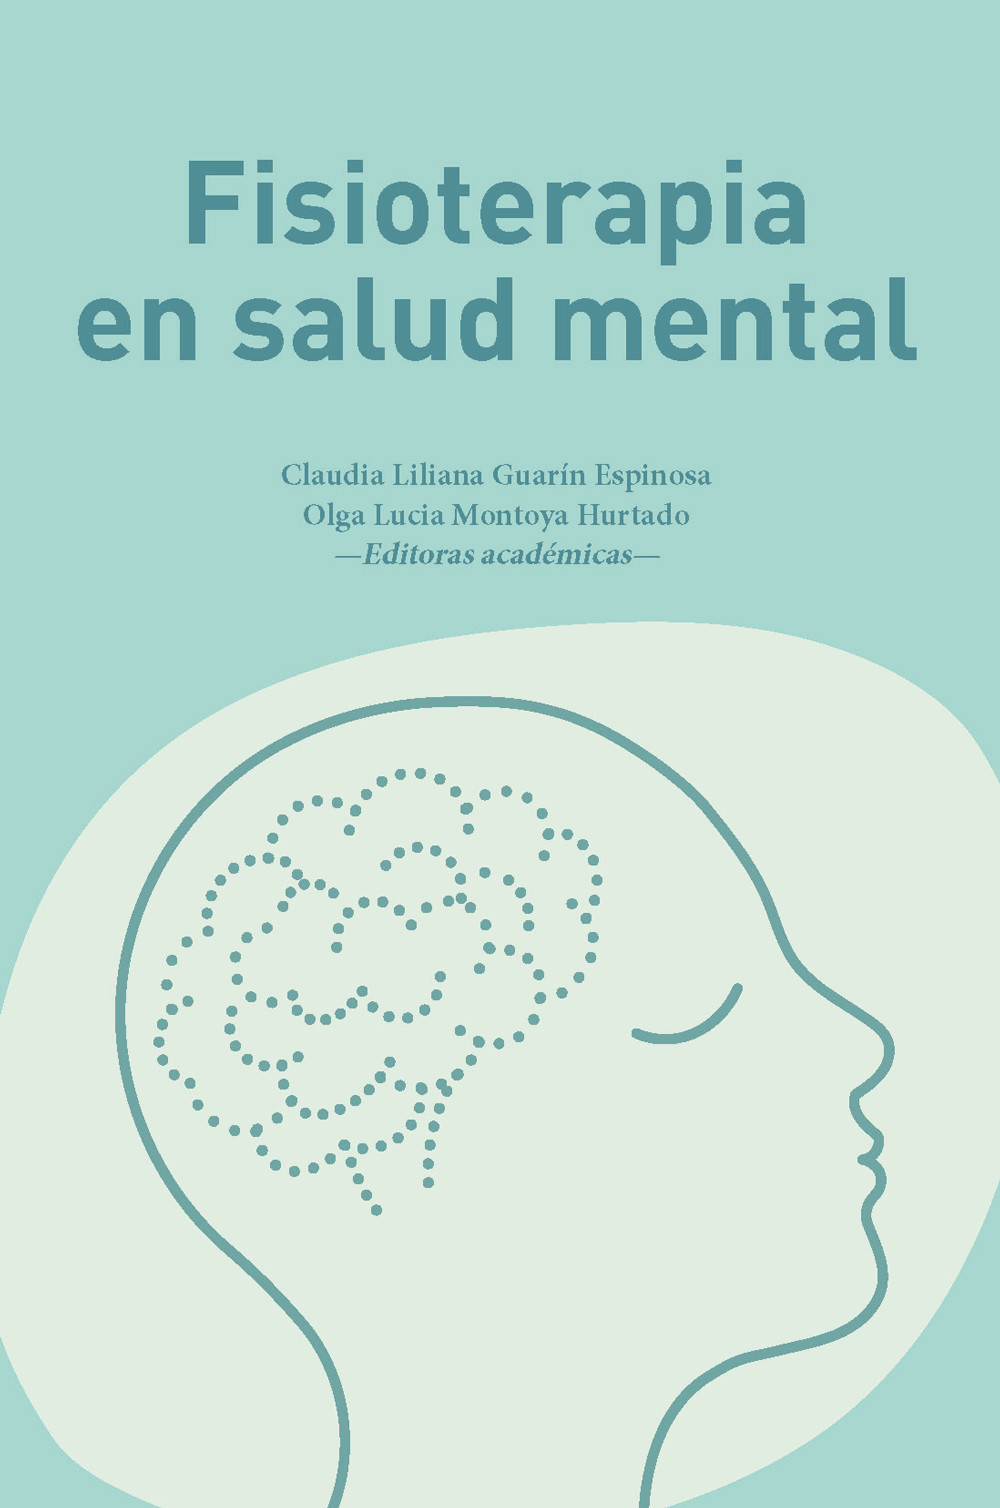 Imagen de portada del libro Fisioterapia en salud mental